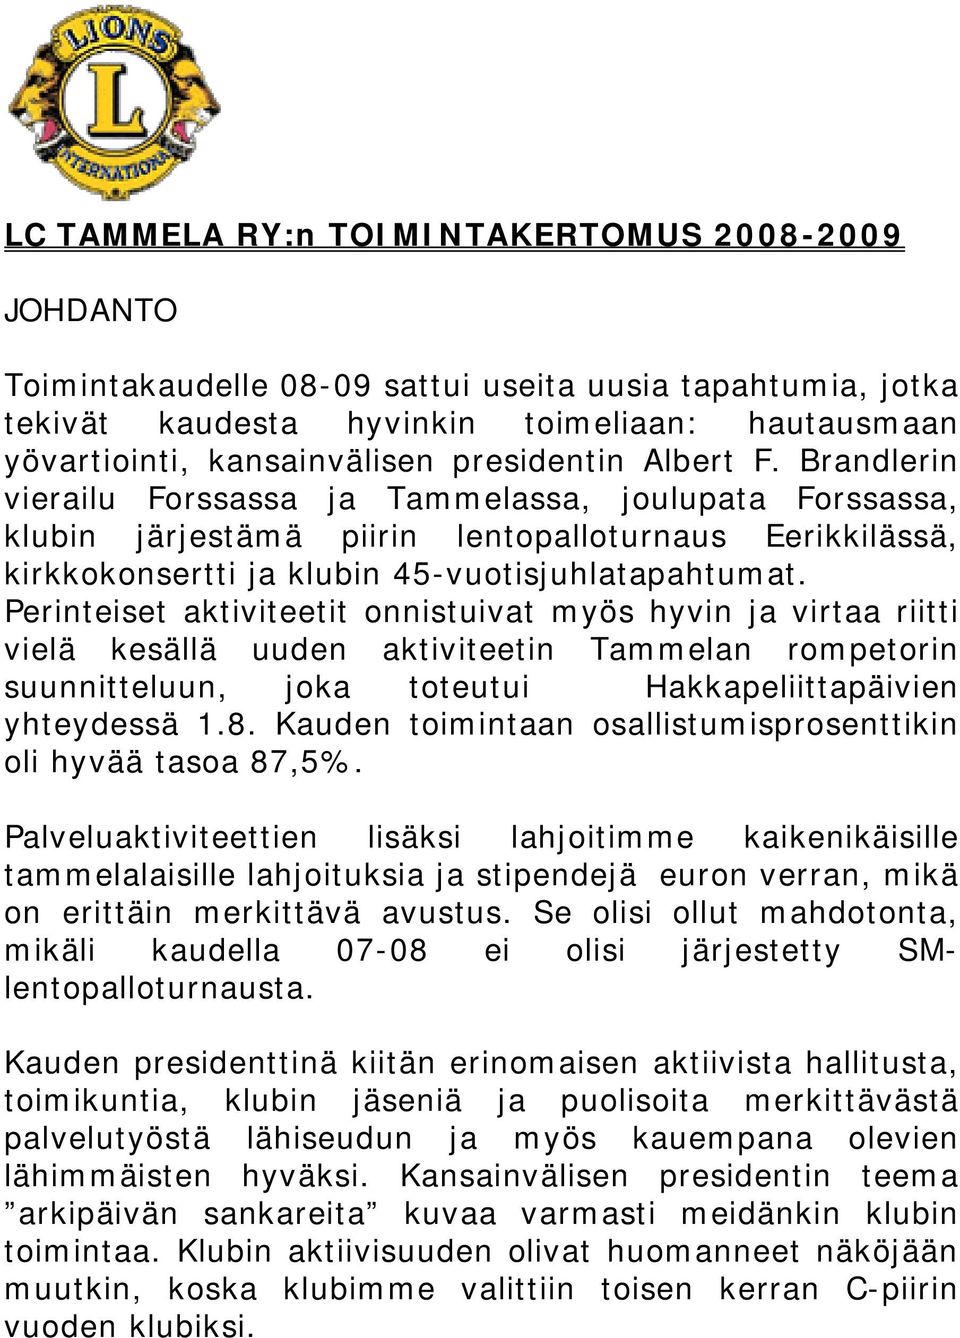 Perinteiset aktiviteetit onnistuivat myös hyvin ja virtaa riitti vielä kesällä uuden aktiviteetin Tammelan rompetorin suunnitteluun, joka toteutui Hakkapeliittapäivien yhteydessä 1.8.